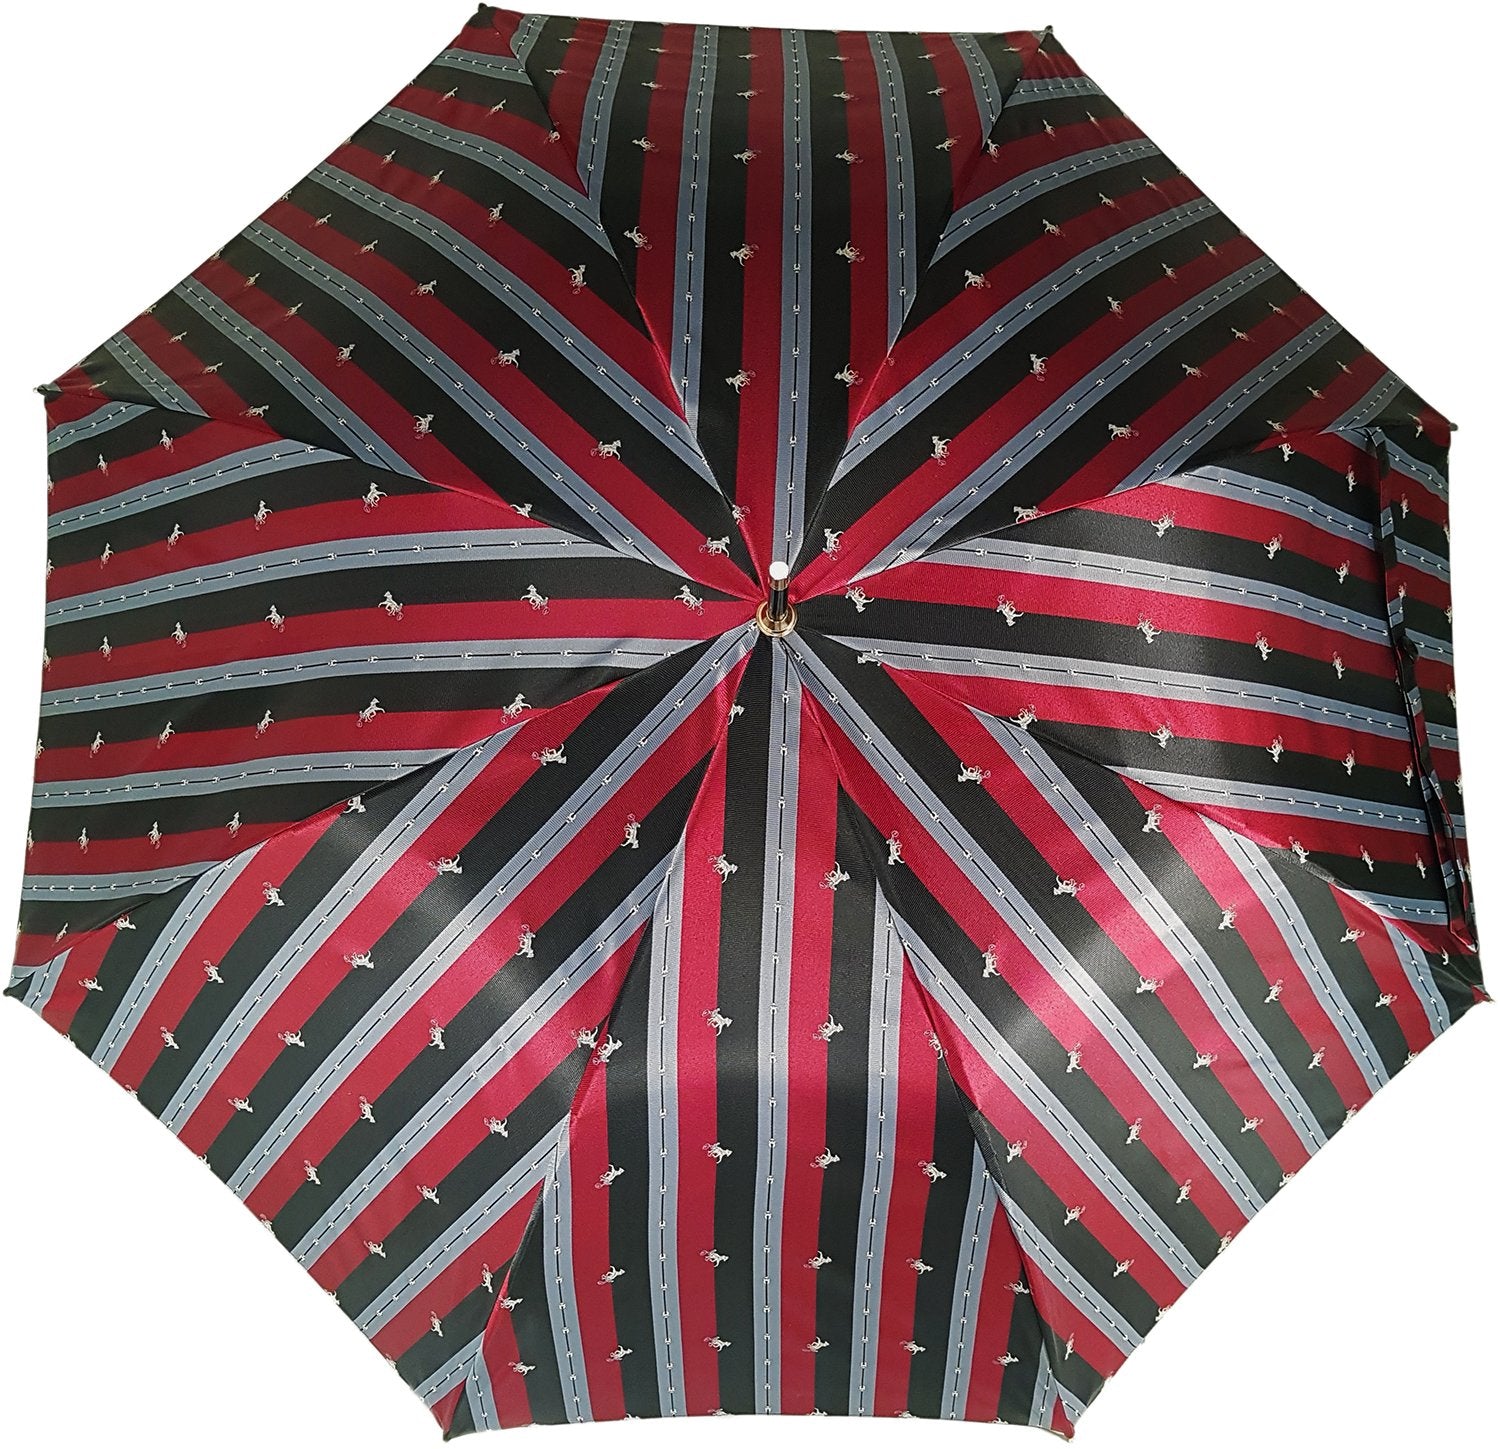 New Double Cloth Men's Umbrella  Exclusive Design - il-marchesato